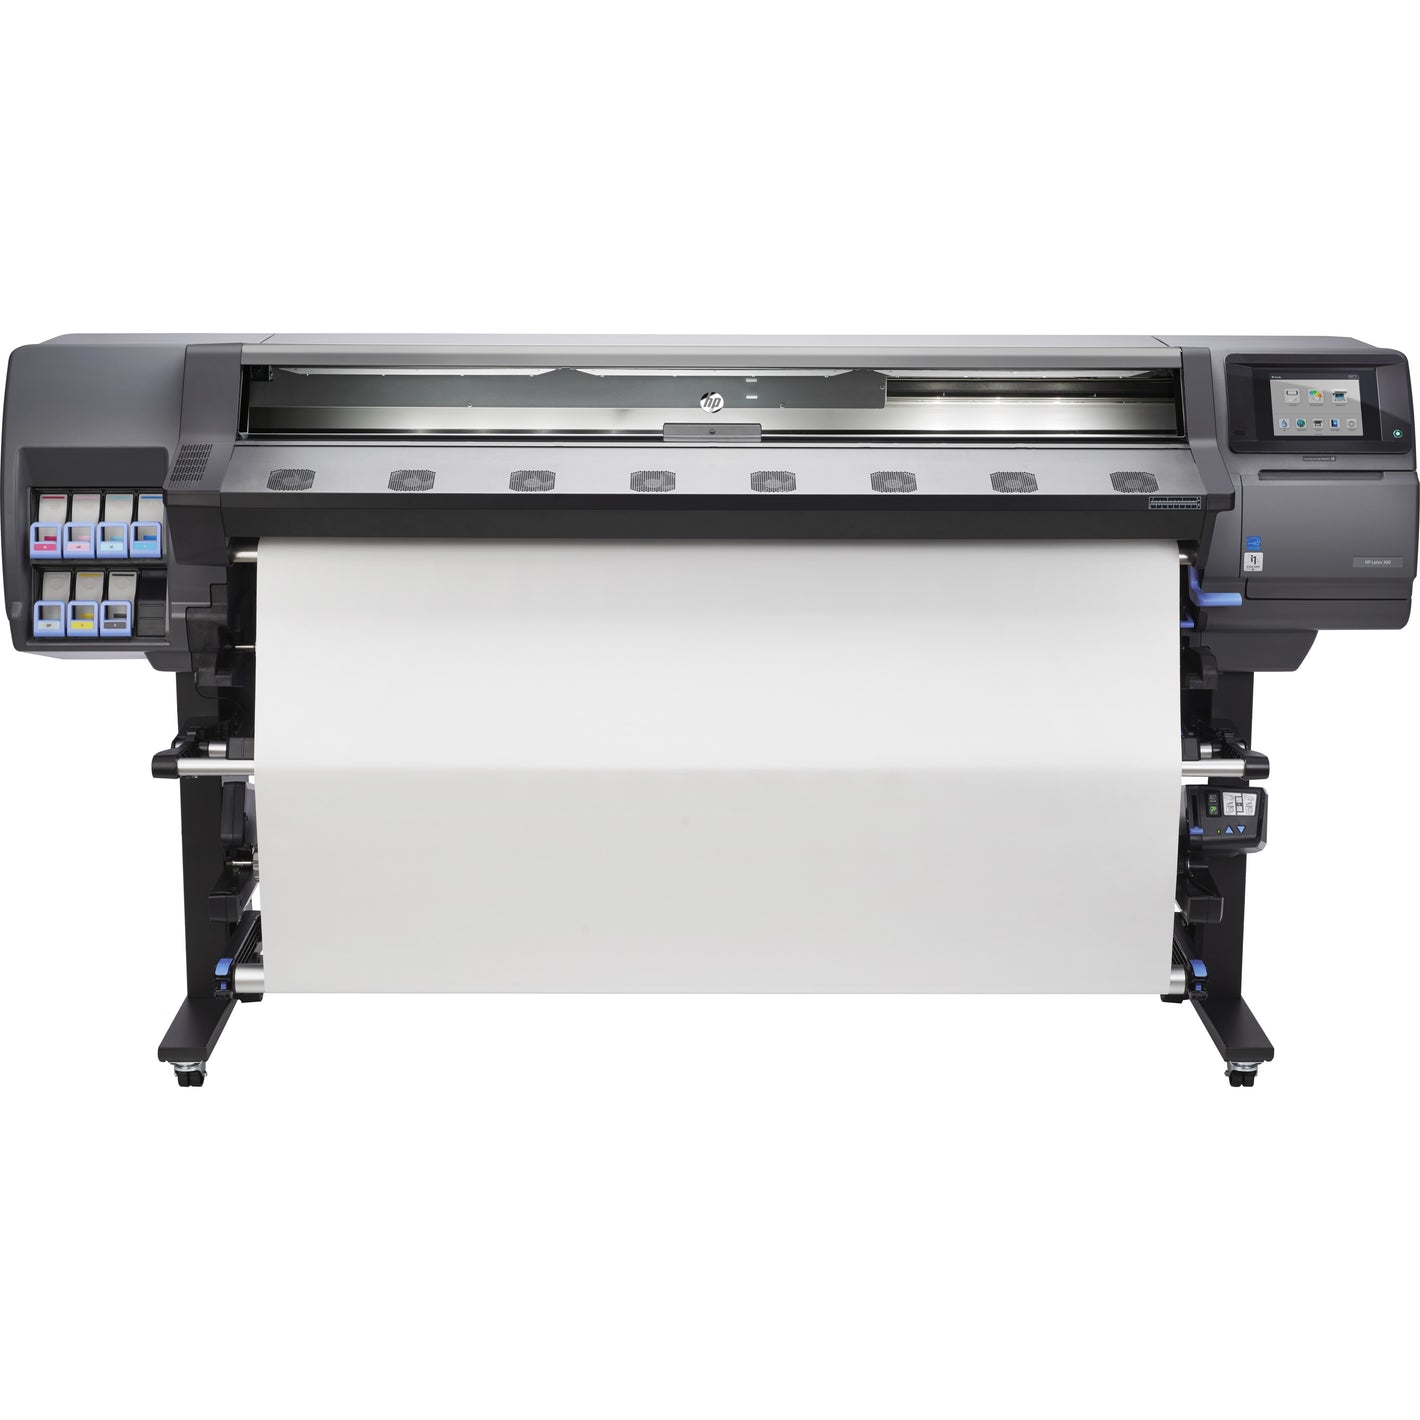 HP Latex 360 Inkjet Large Format Printer - 63.98" Print Width - Color - B4H70A#B1K